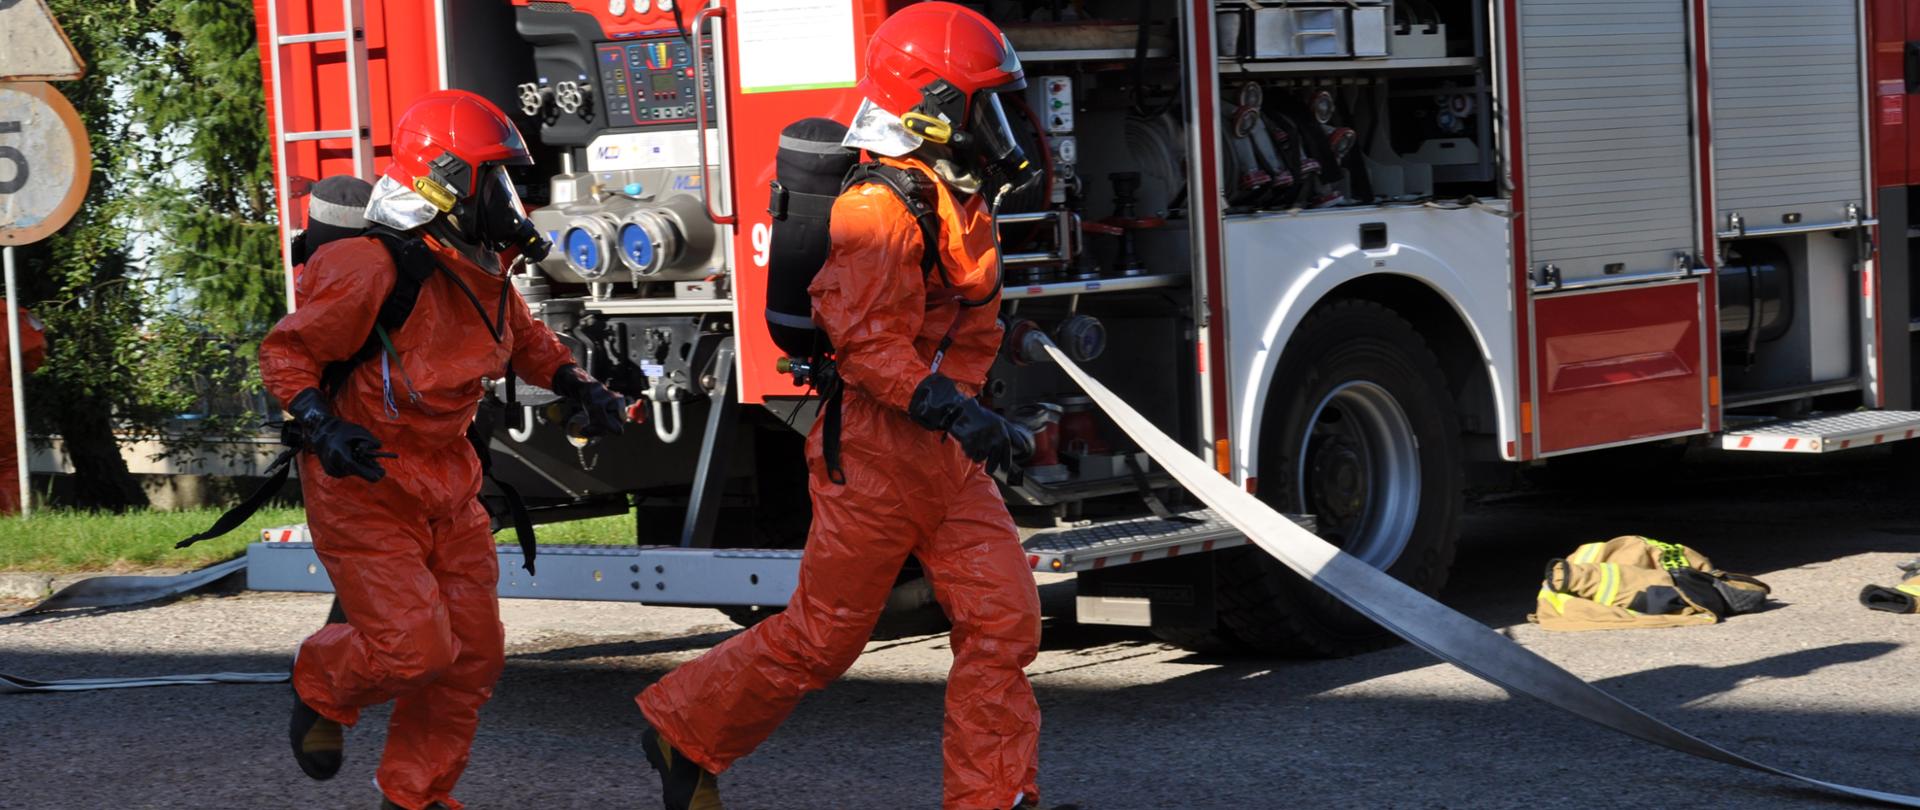 Strażacy w pomarańczowych ubraniach ochronnych udają się na rozpoznanie miejsca zdarzenia